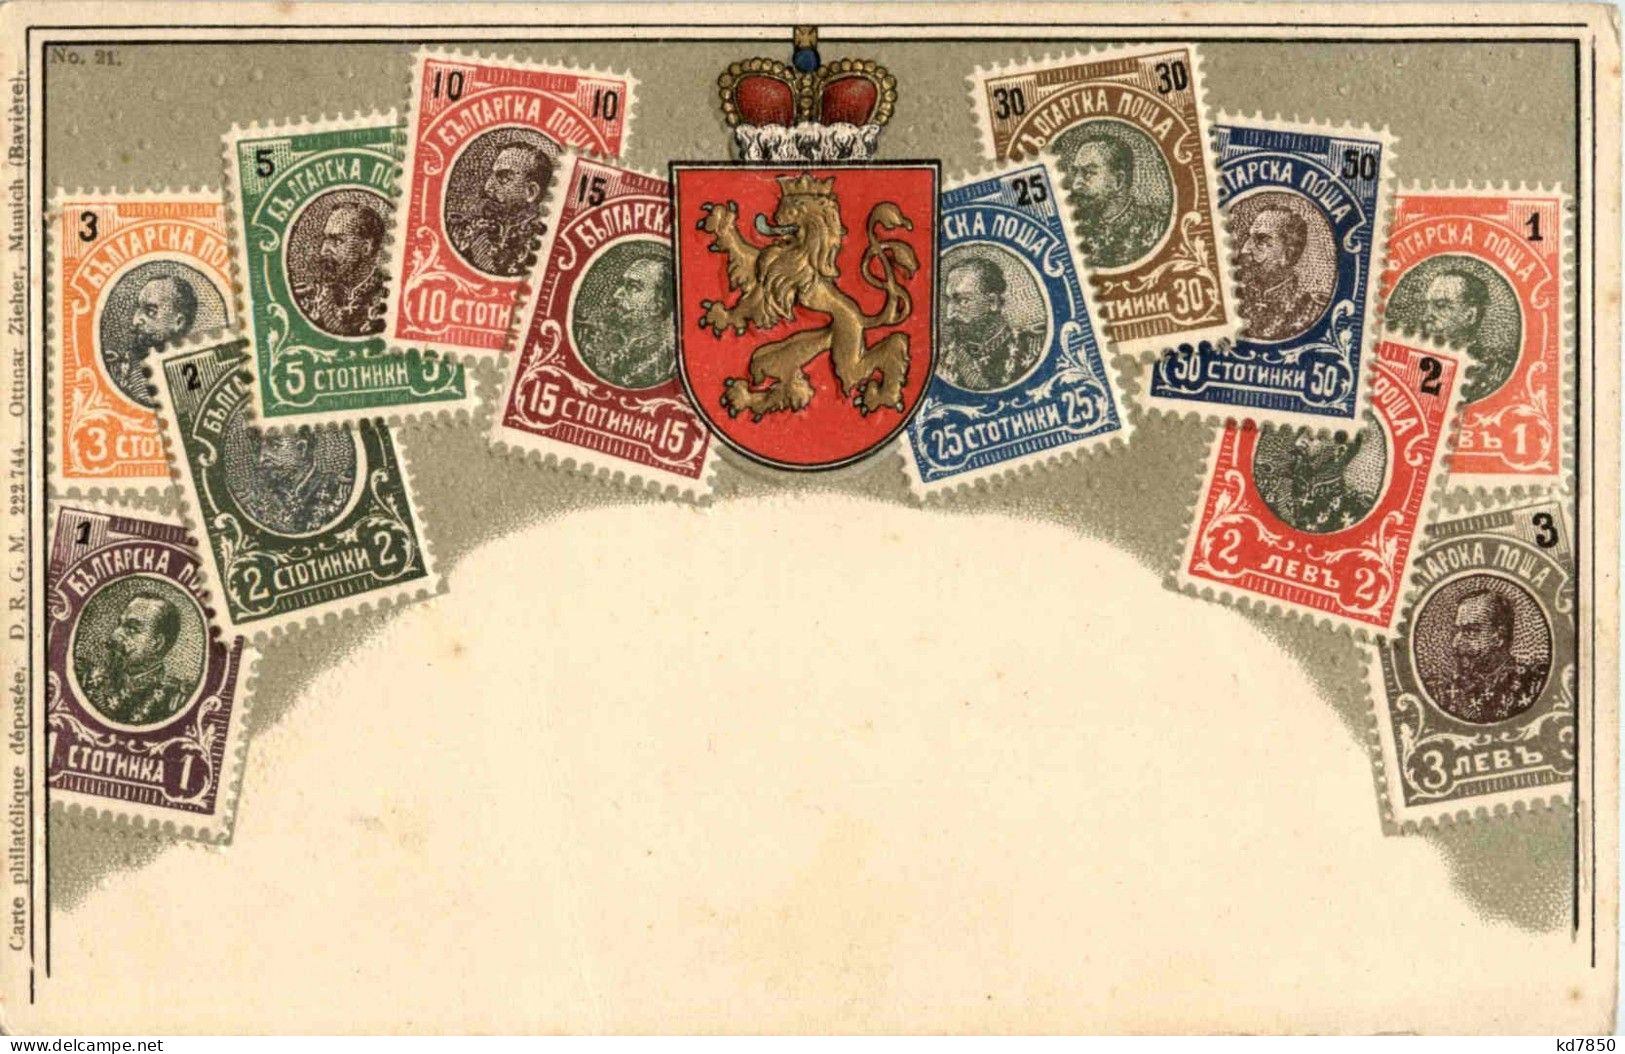 Bulgaria - Briefmarken - Stamps - Prägekarte - Sellos (representaciones)